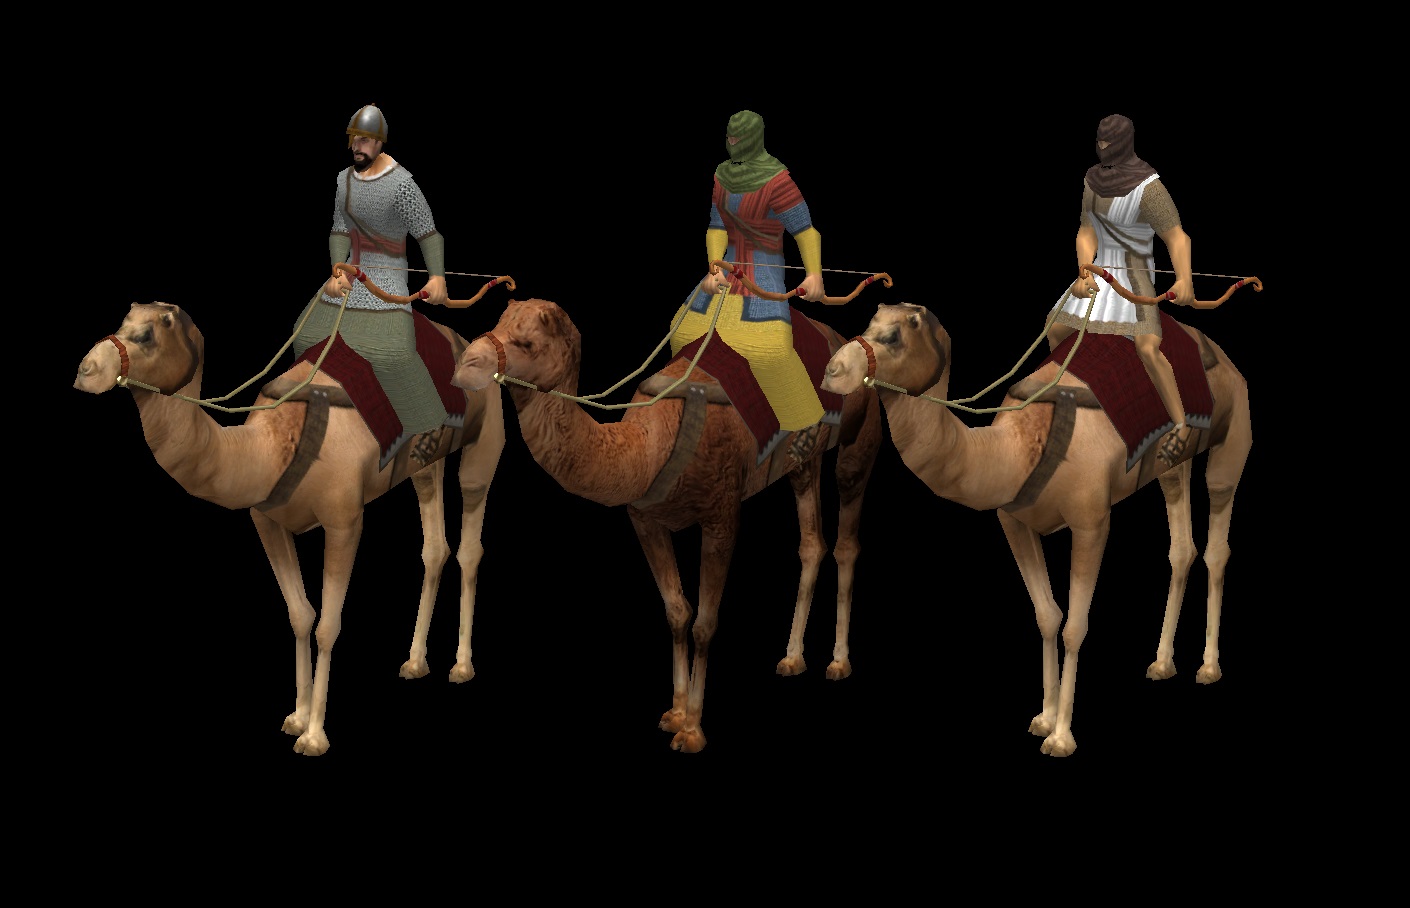 Umayyads image - Millennium A.D. mod for 0 A.D. Empires Ascendant.